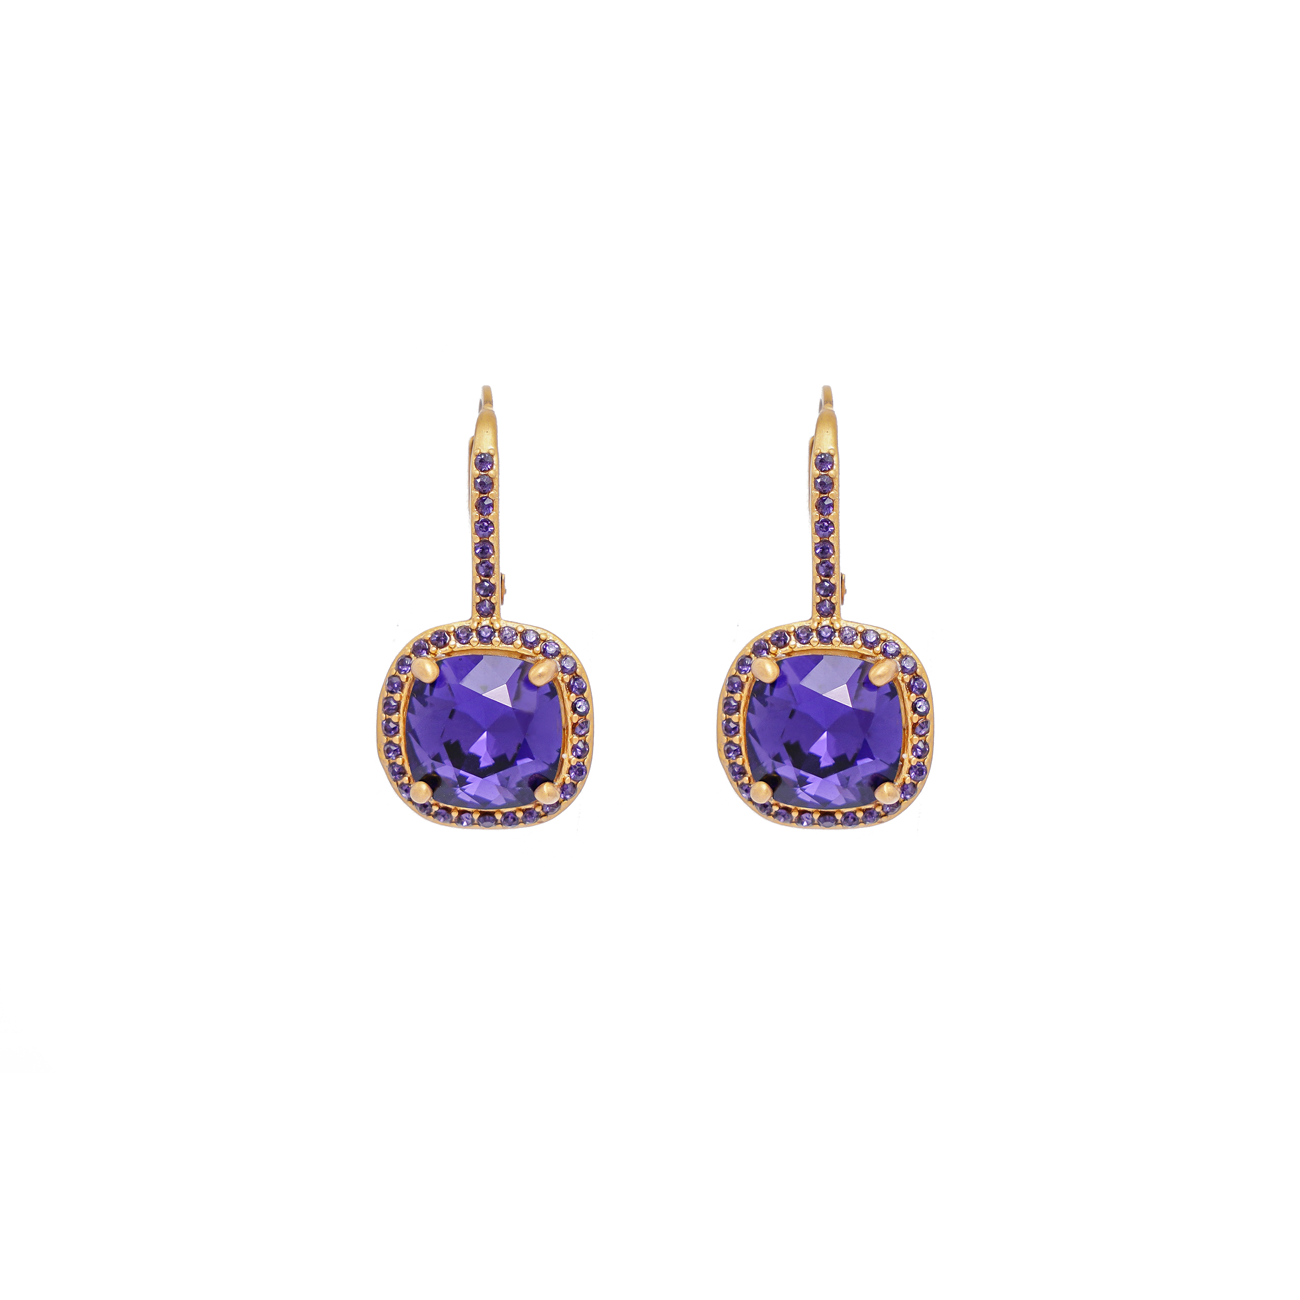 Ingrid Swarovski earrings, Purple velvet